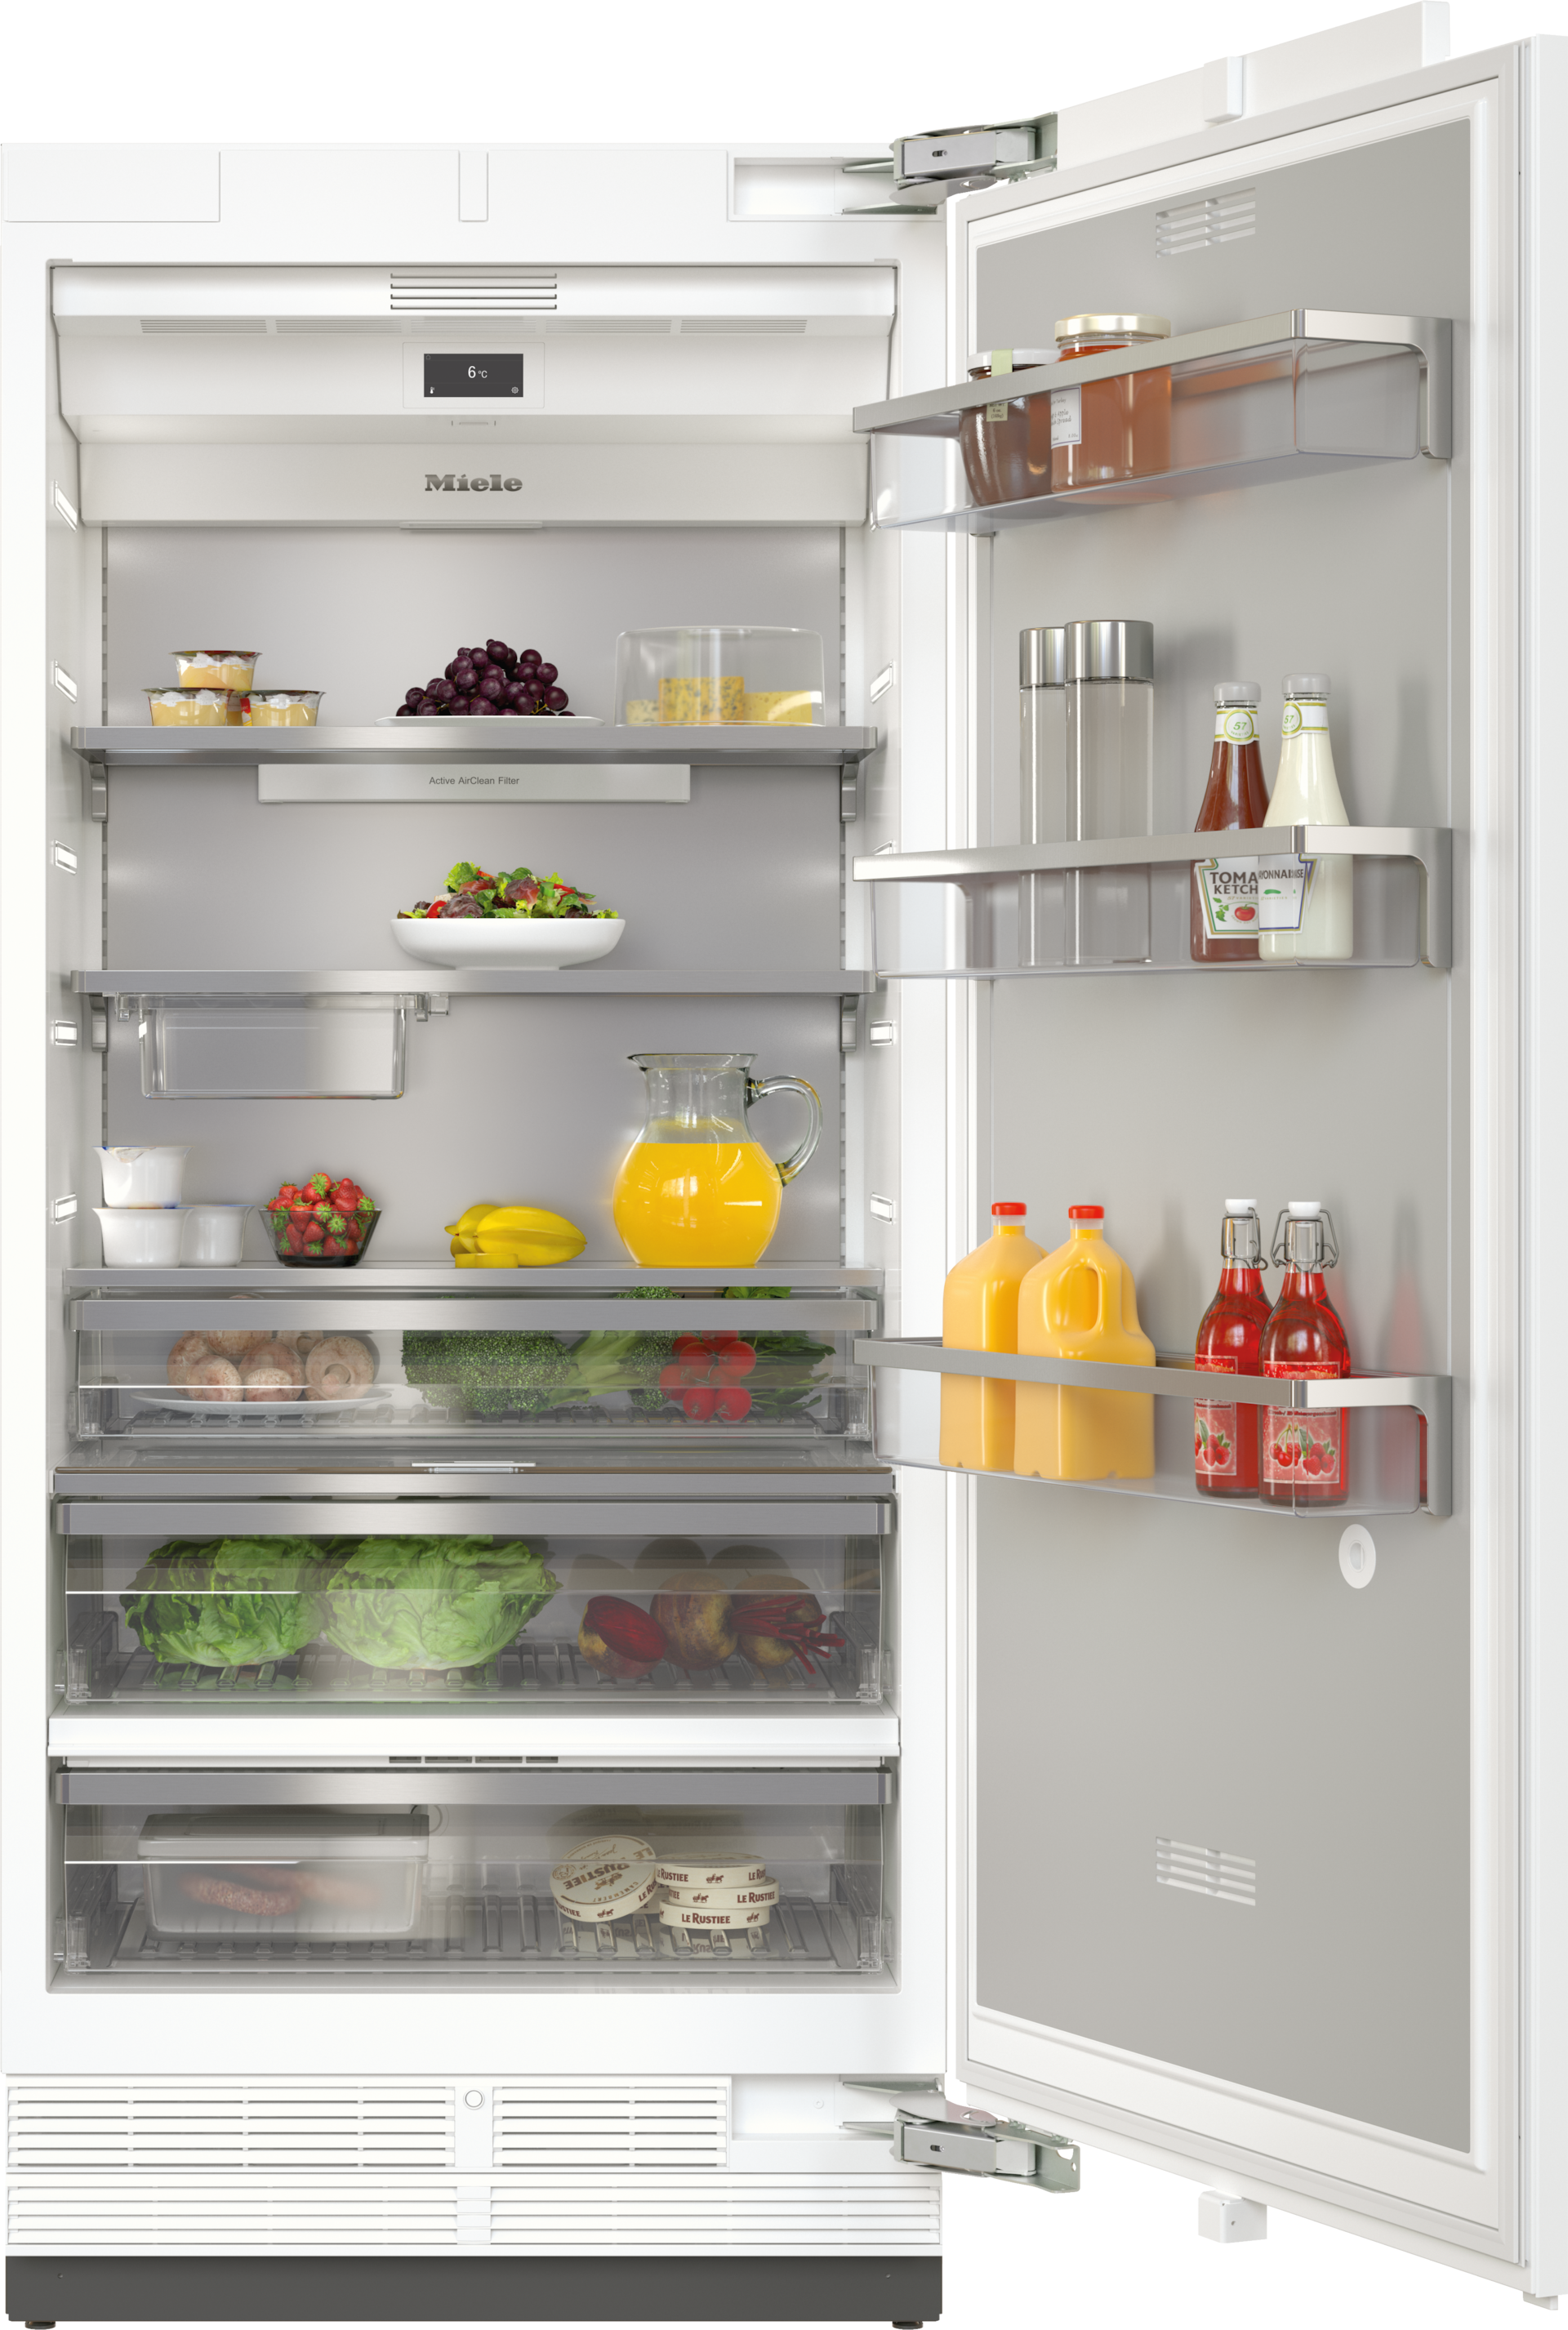 Refrigeration - K 2902 Vi - 1